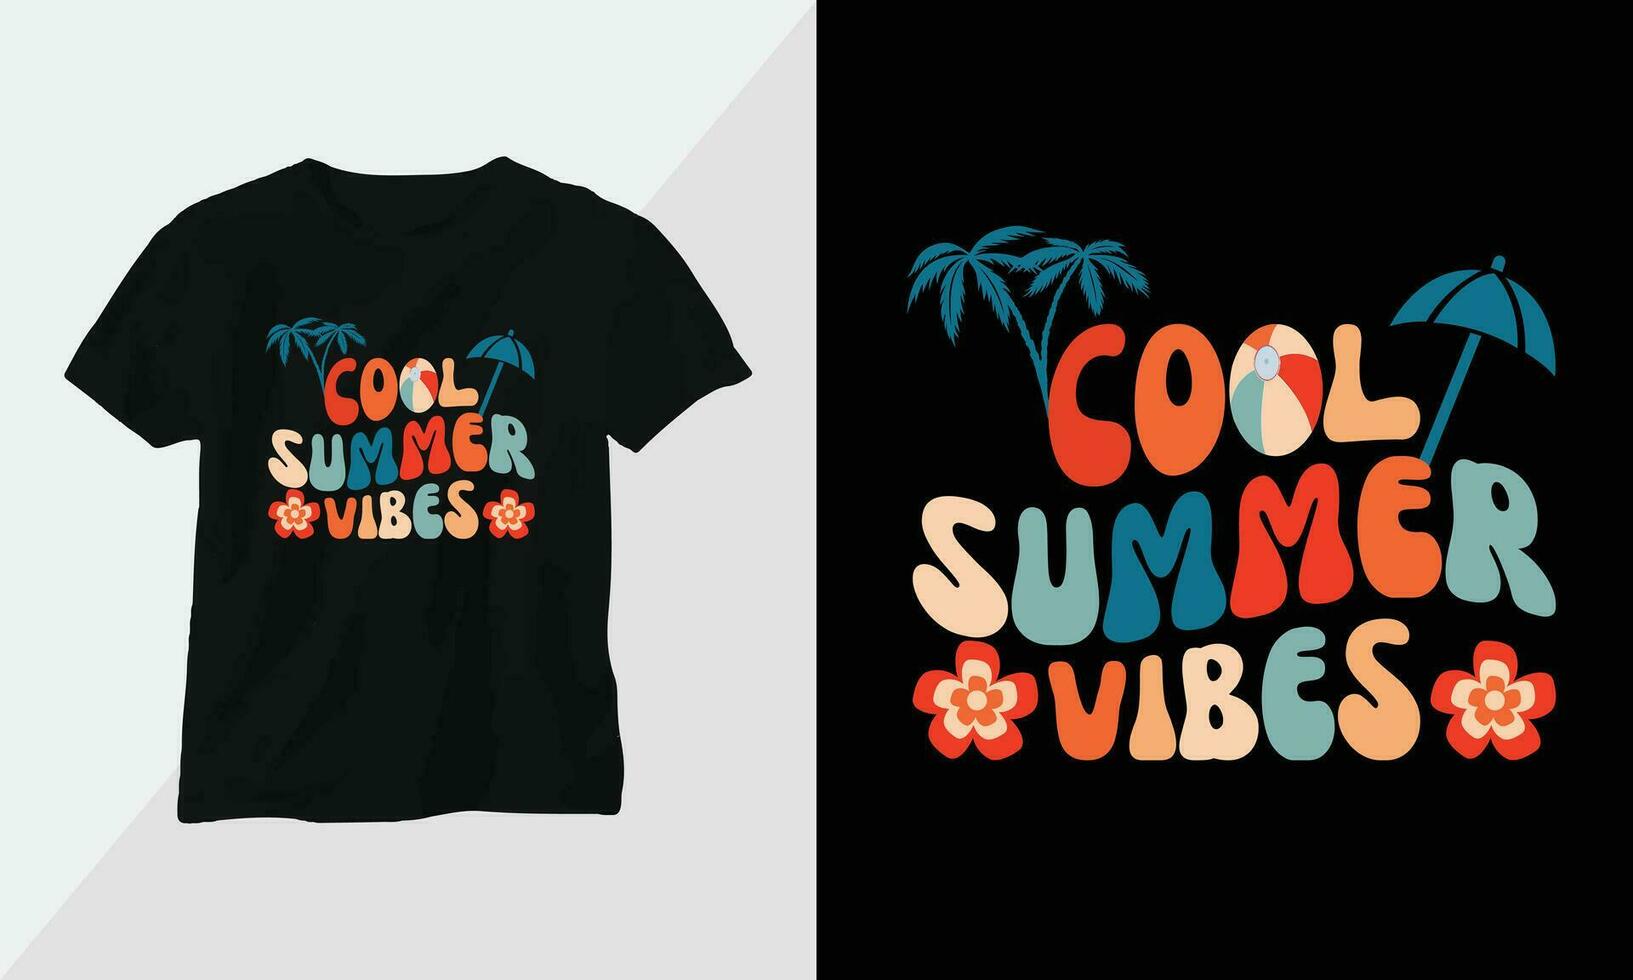 verano surf camiseta diseño concepto. todas diseños son vistoso y creado utilizando tabla de surf, playa, verano, mar, etc vector